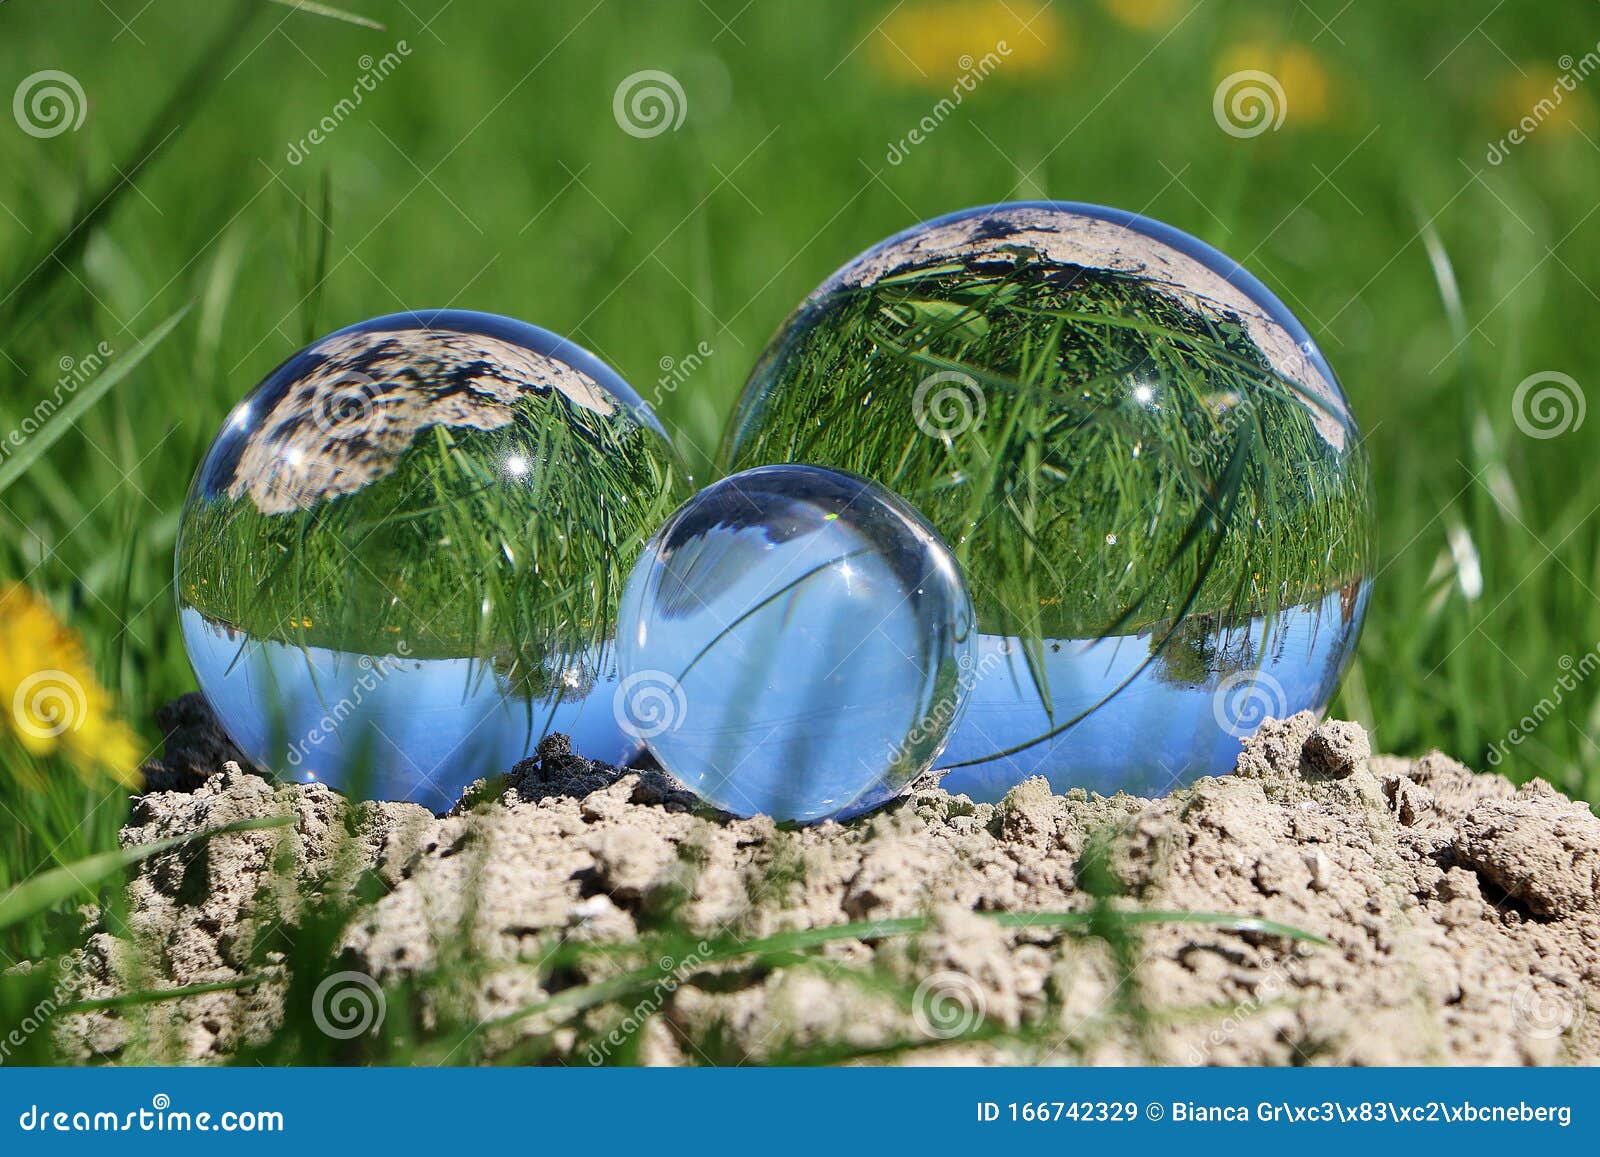 Drie Glazen Bollen Van Verschillende Liggen Op Heuvel in De Tuin Weerspiegelen De Natuur Stock Afbeelding - Image of ballen, kust: 166742329